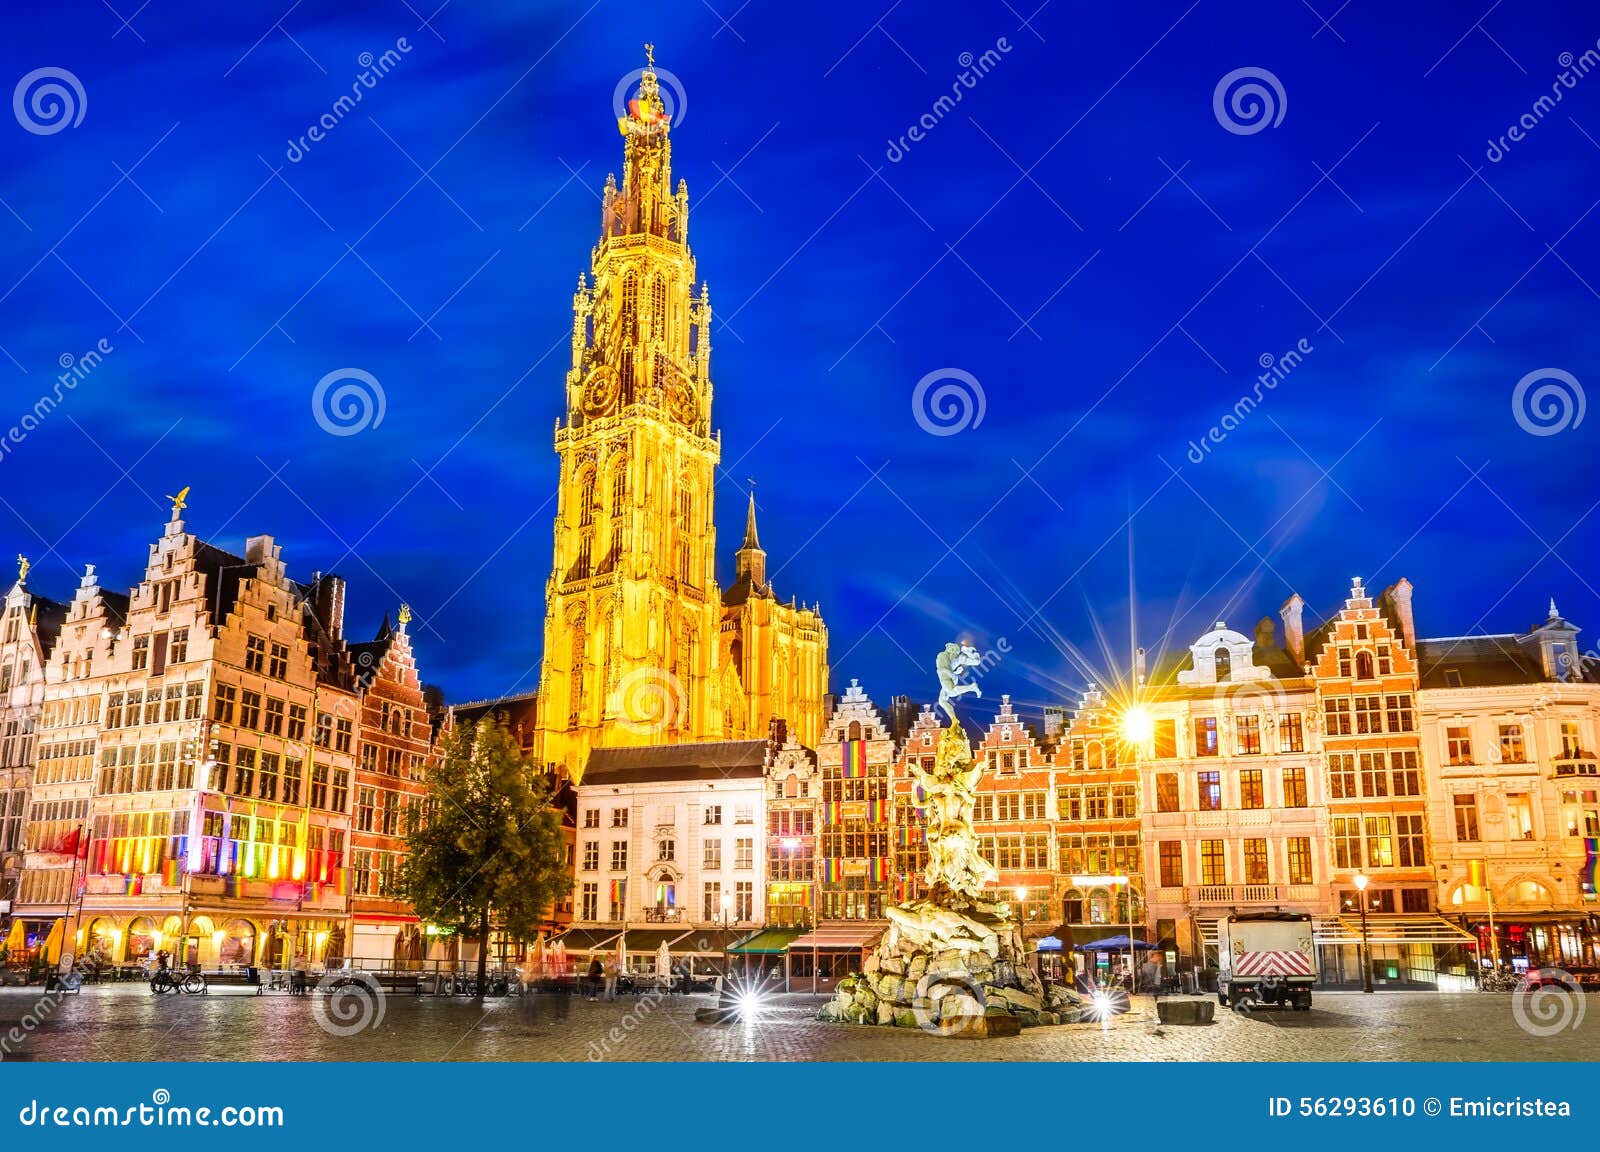 Anversa, Belgio. Antwerpen, Belgio Scena di notte Anversa del centro, nel Belgio lungo Meir Street famoso e la torre sola della cattedrale della nostra signora